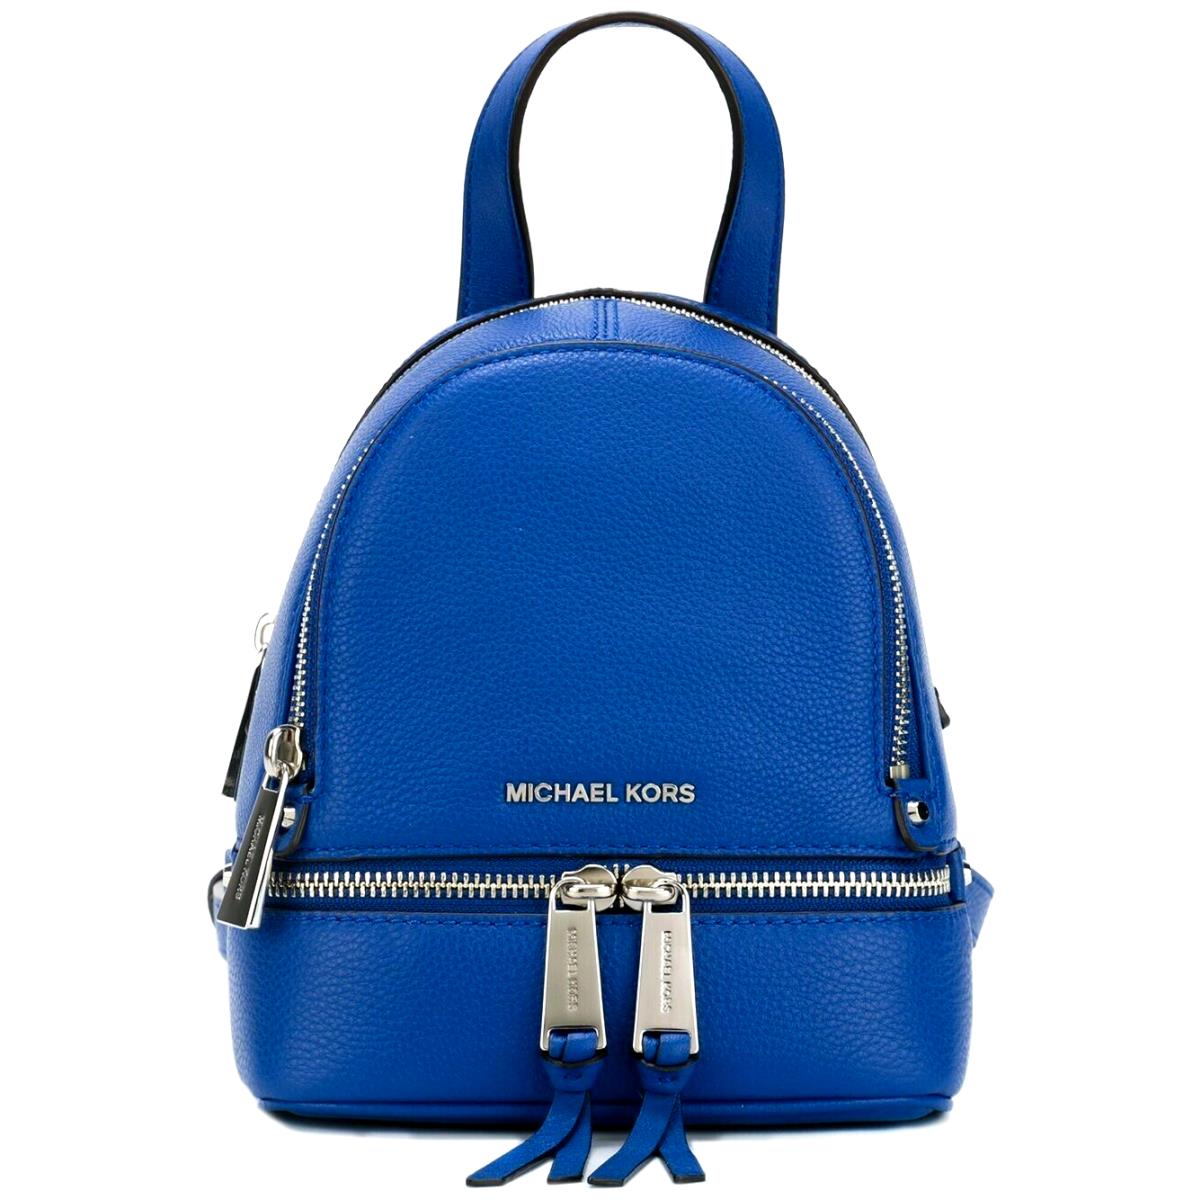 Michael Kors Large Women Travel School Backpack Shoulder Handbag electric  blue 196163280660 | eBay